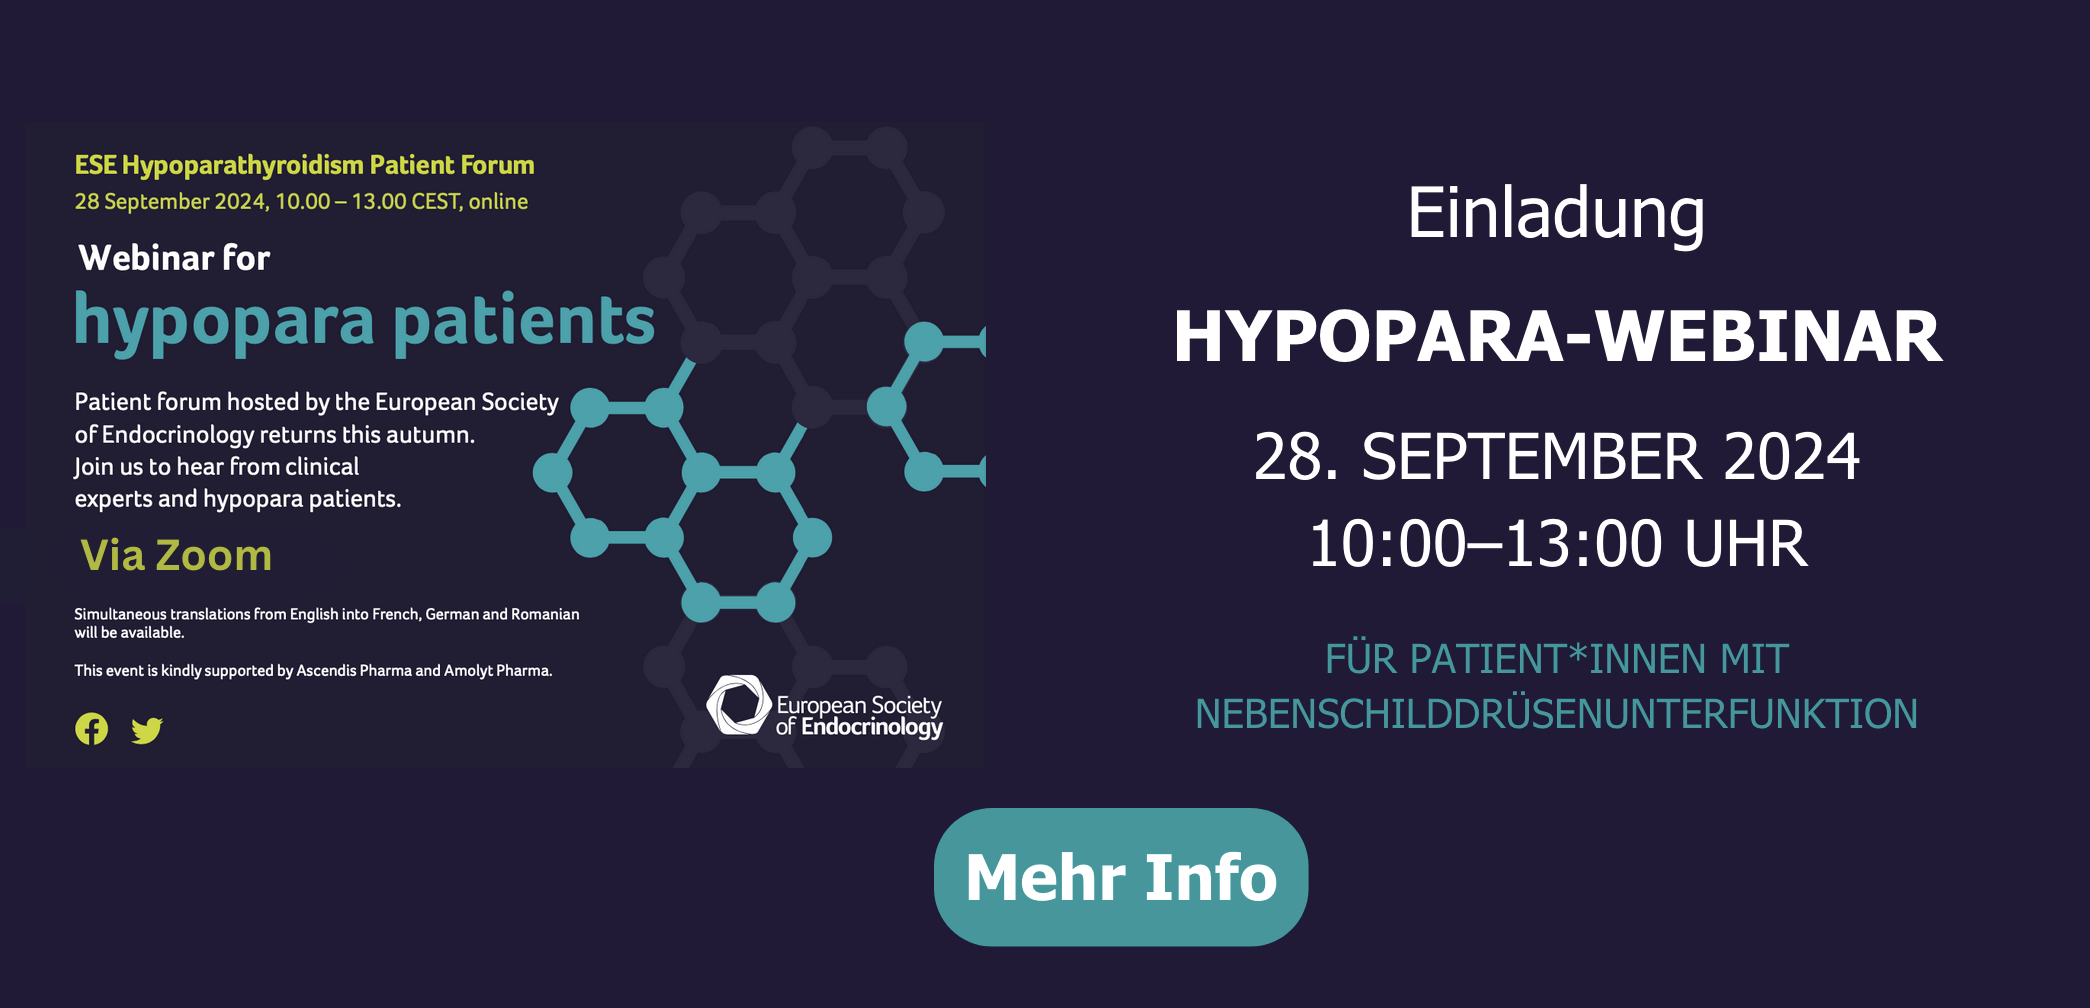 Einladung für das Hypopara Patient Forum am 28. September 2024 von 10 bis 13 Uhr. Klicken für mehr Info.